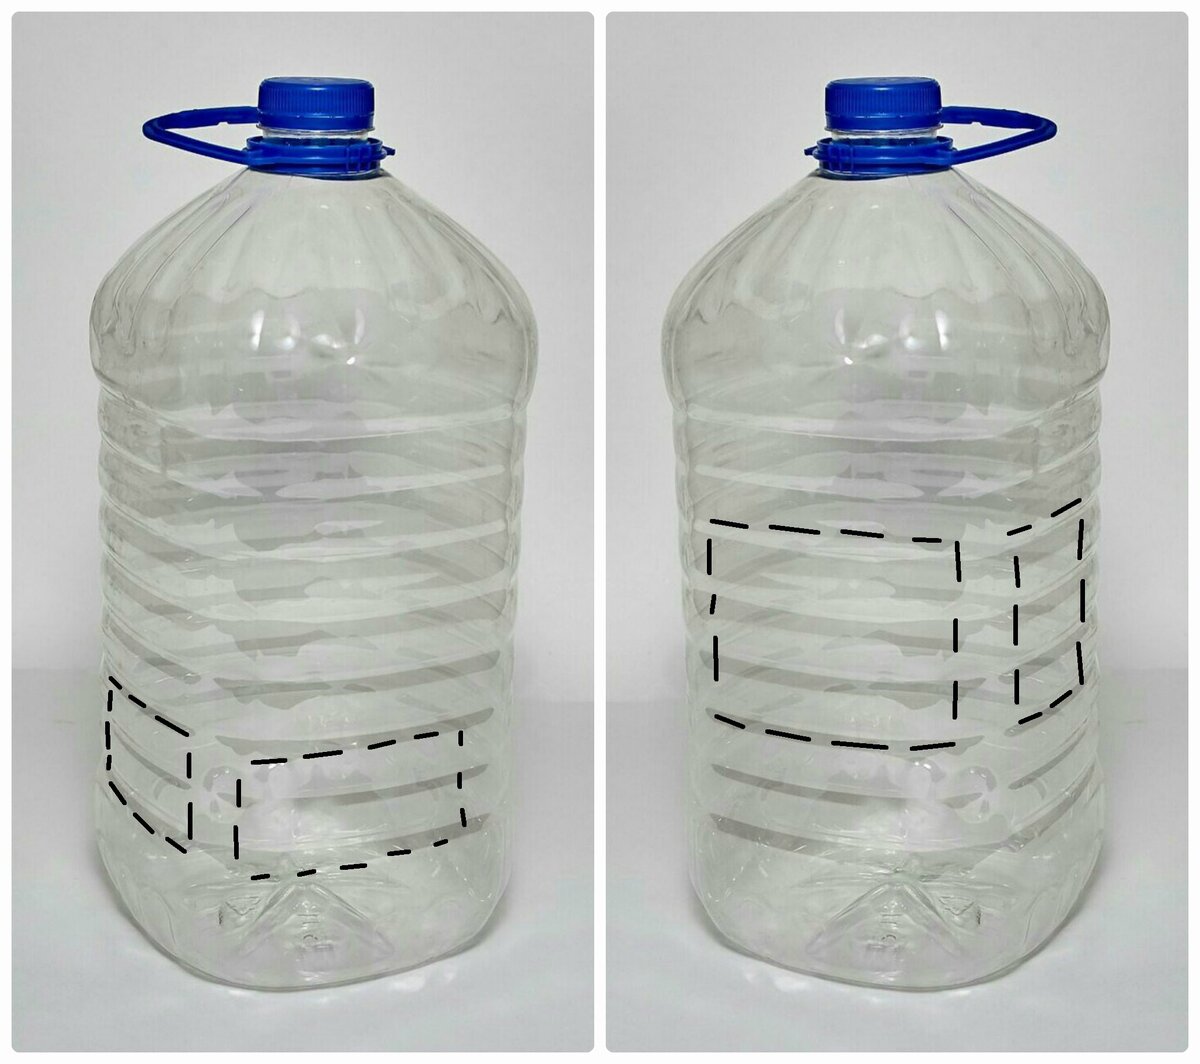 Кормушка для кур своими руками из пластиковой бутылки 5 литров: как сделать самому и как пользоваться, а также другие варианты, которые можно купить